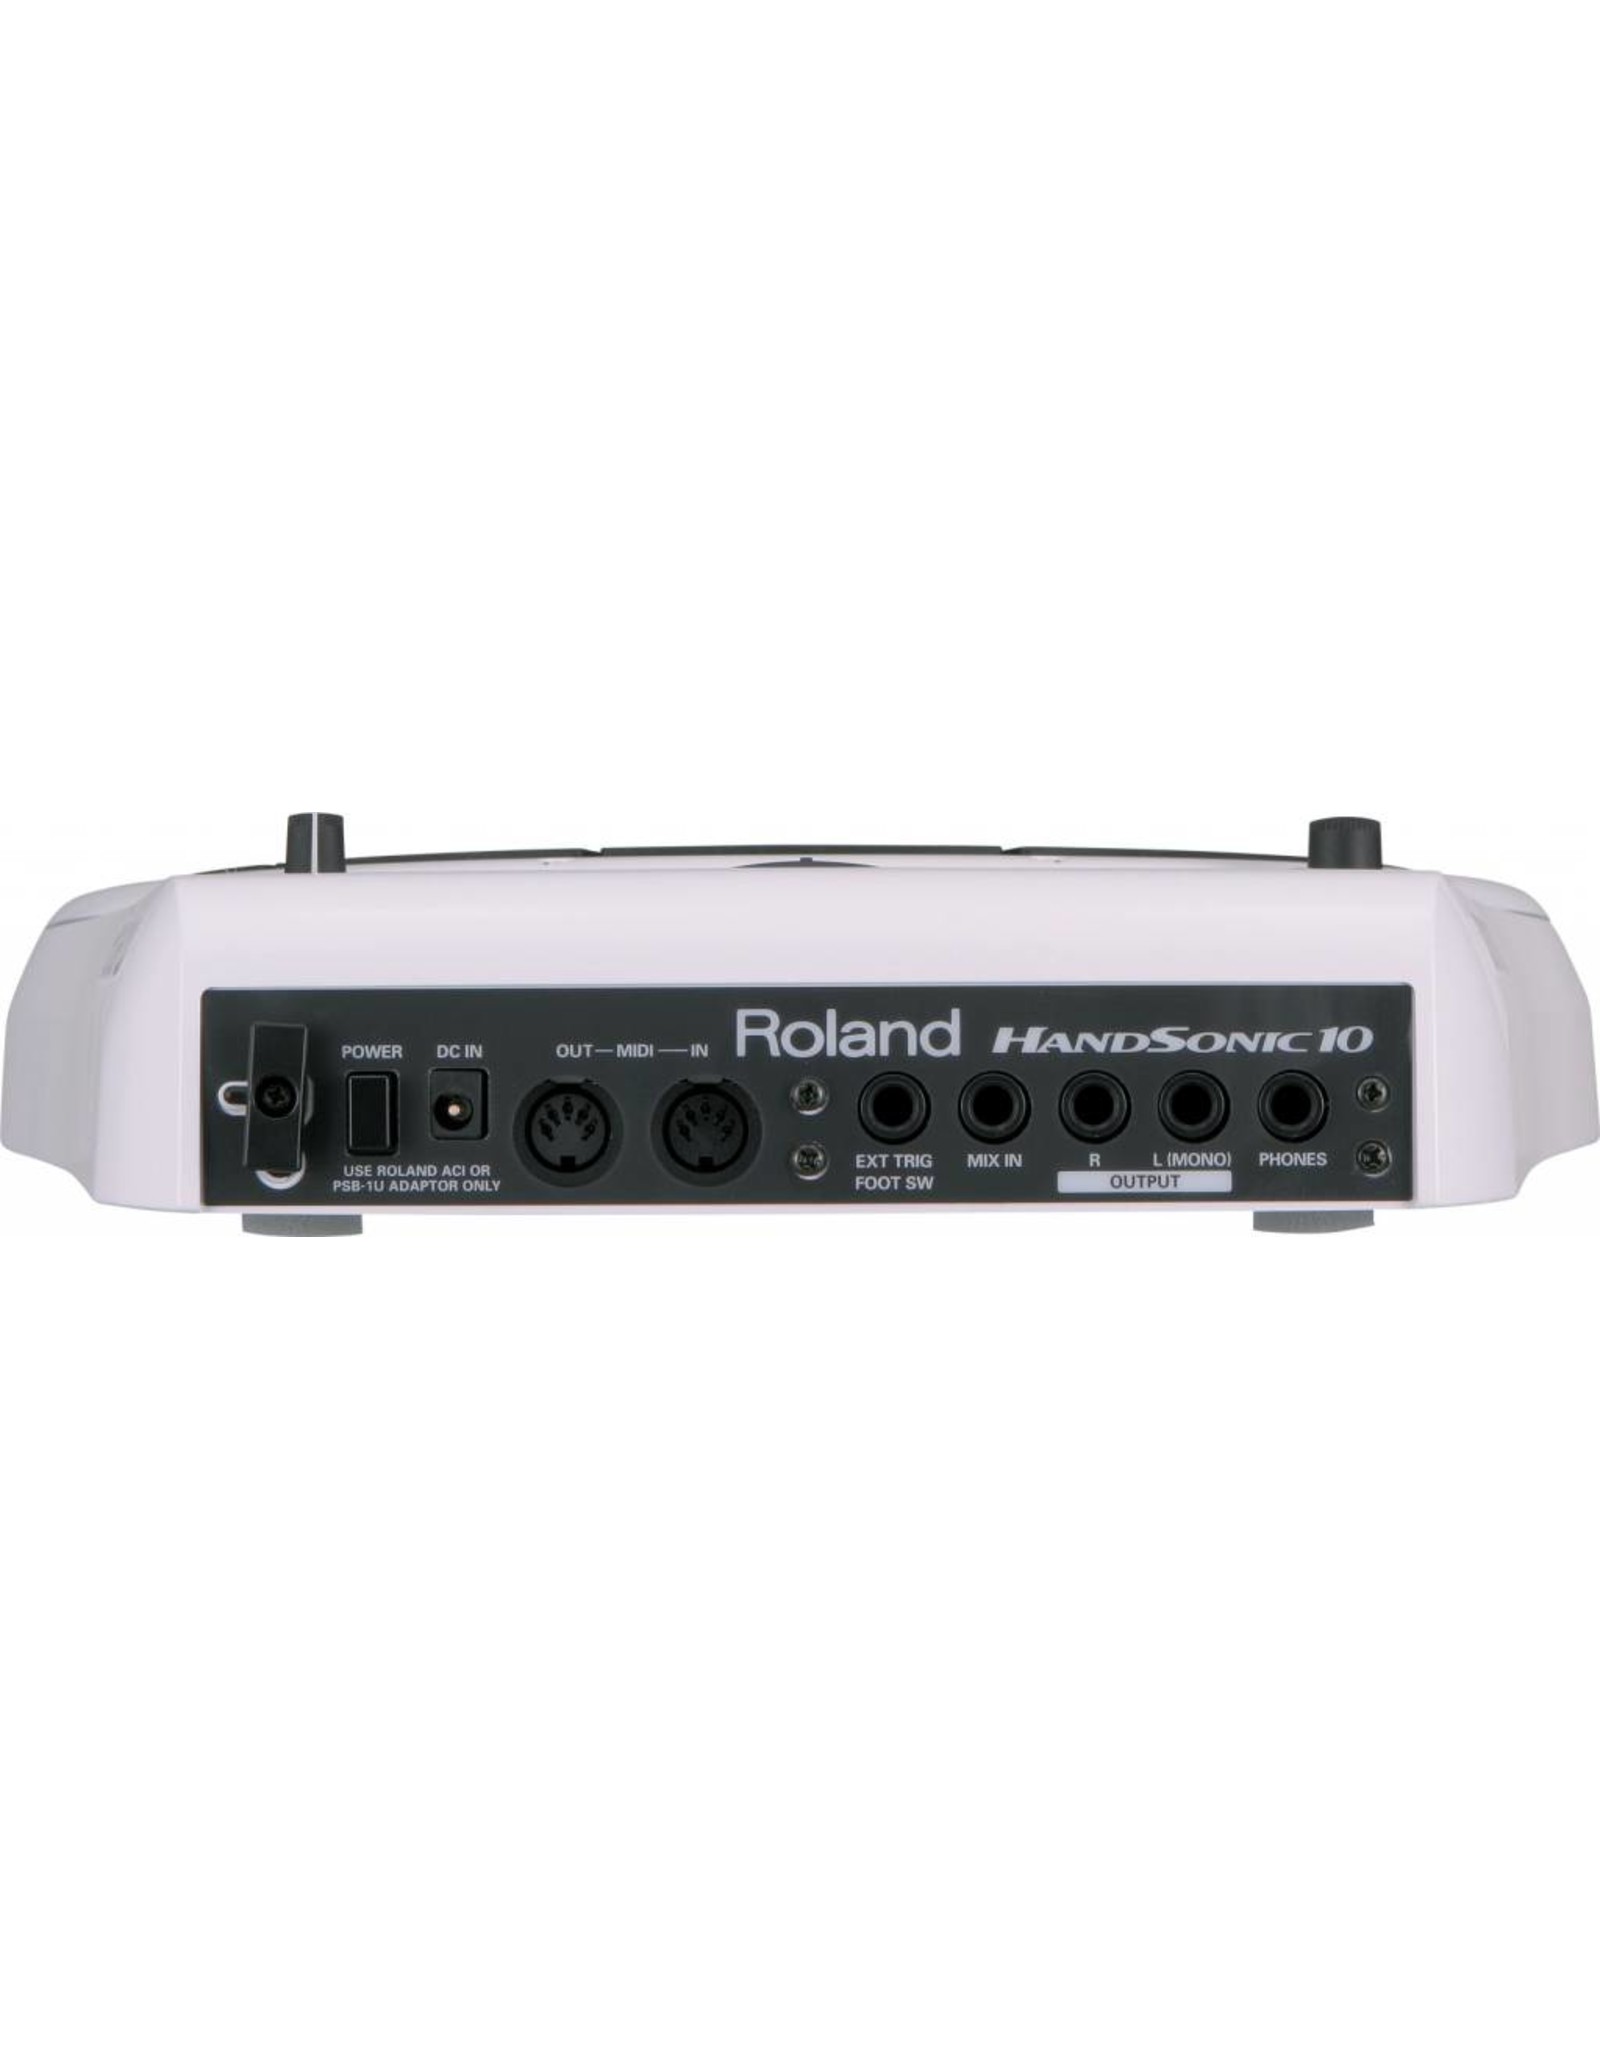 Roland  HPD10 multi percussion pad - Demo model